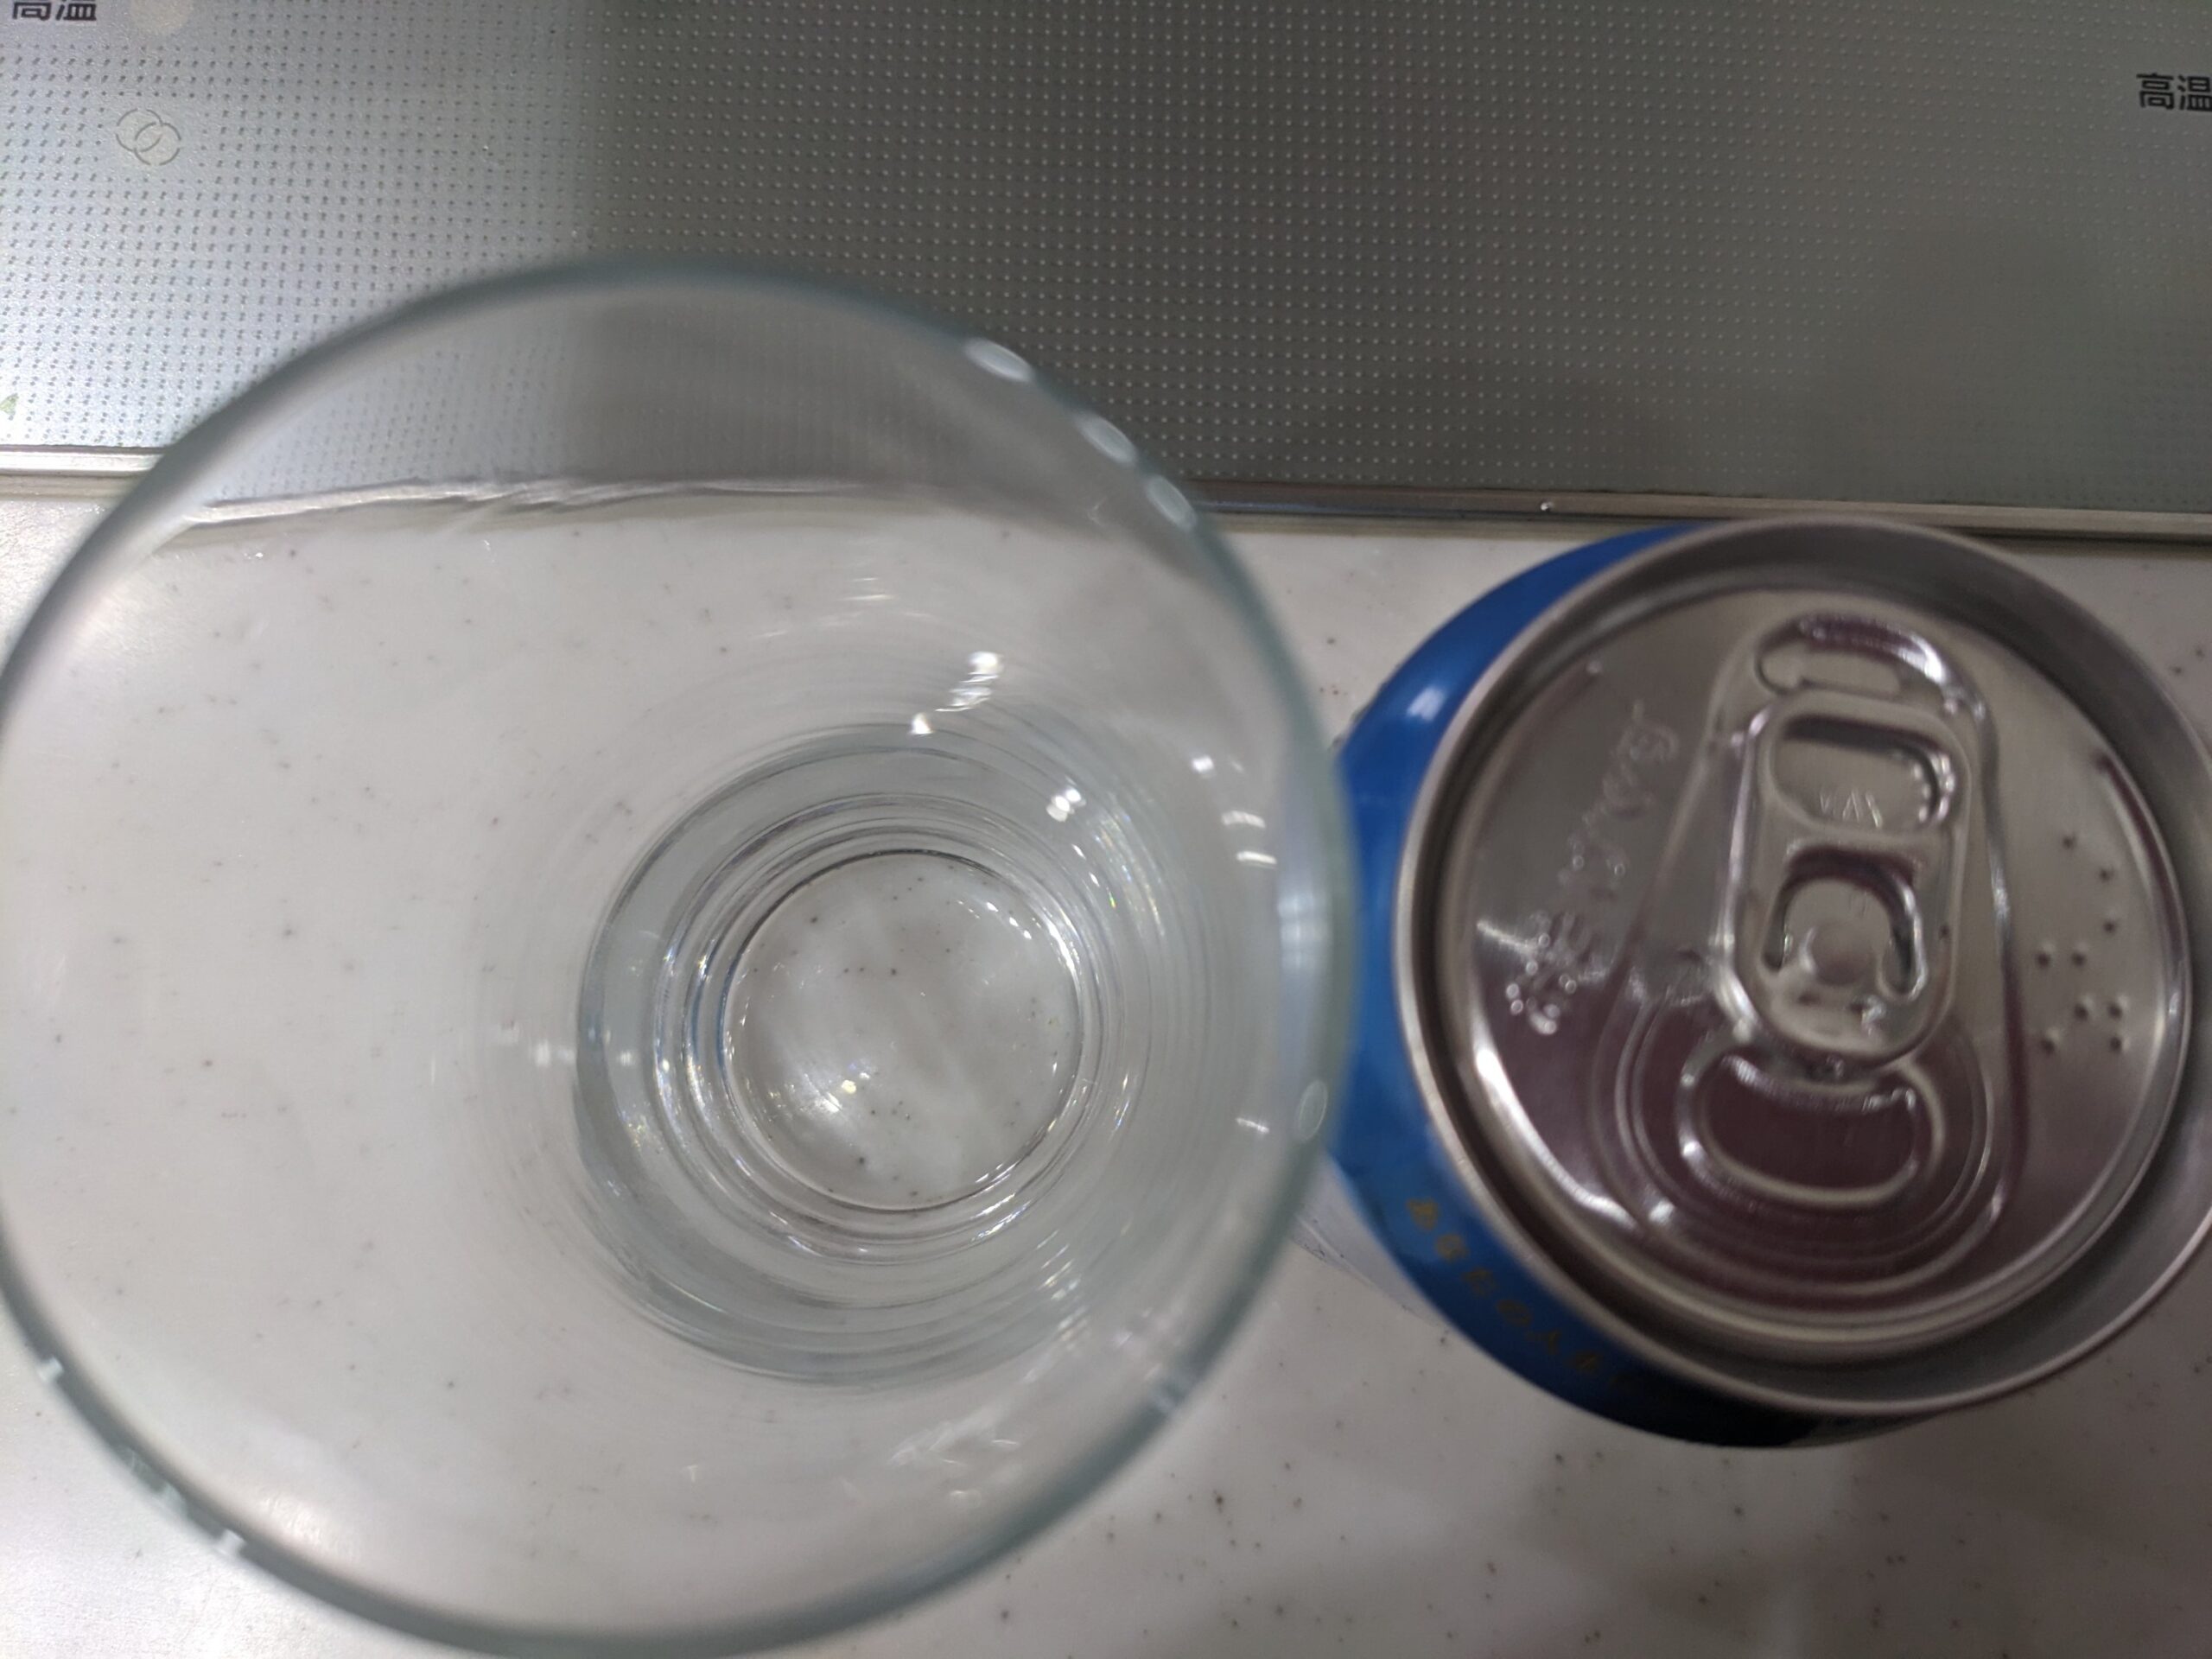 上から見たグラスと缶の「伊勢角屋麦酒XPA（エックスピーエー）」